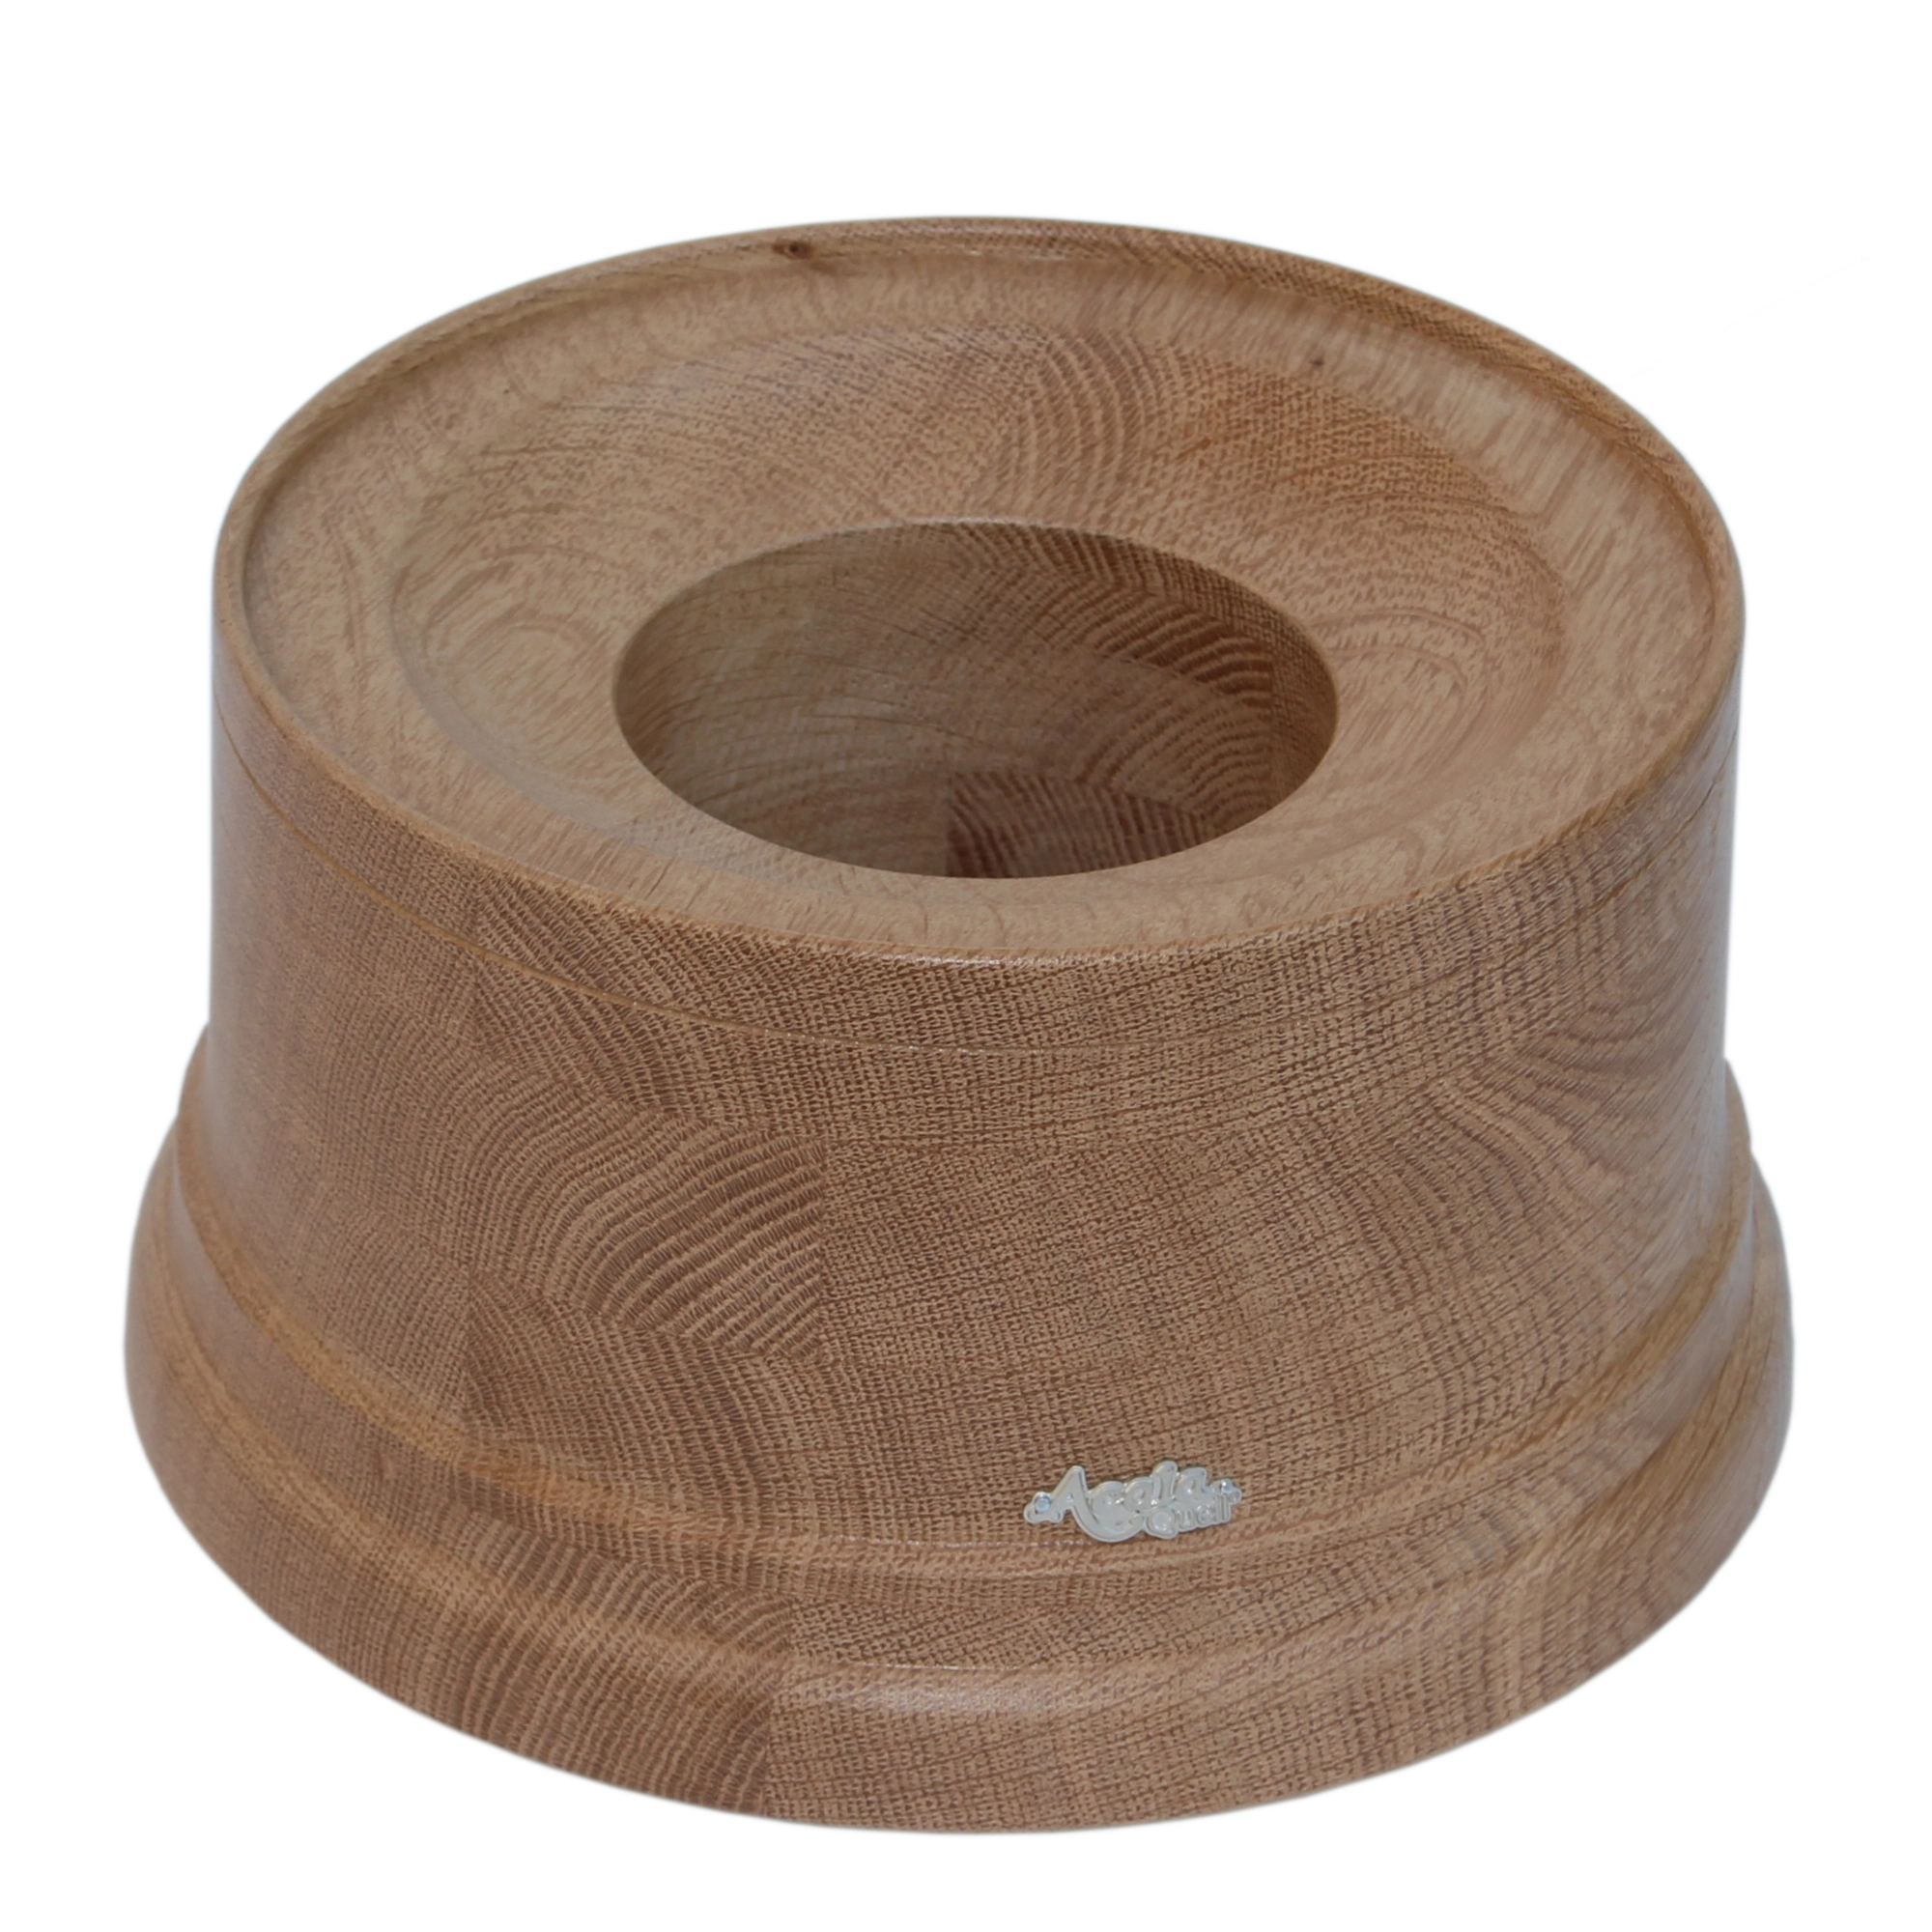 Zu sehen ist ein Sockel für den Acala Wasserfilter Mini aus wunderschön gemustertem Eiche Echtholz vor weißem Hintergrund. Auf dem Sockel befindet sich ein schlichtes, kleines, silbernes Acala Logo.